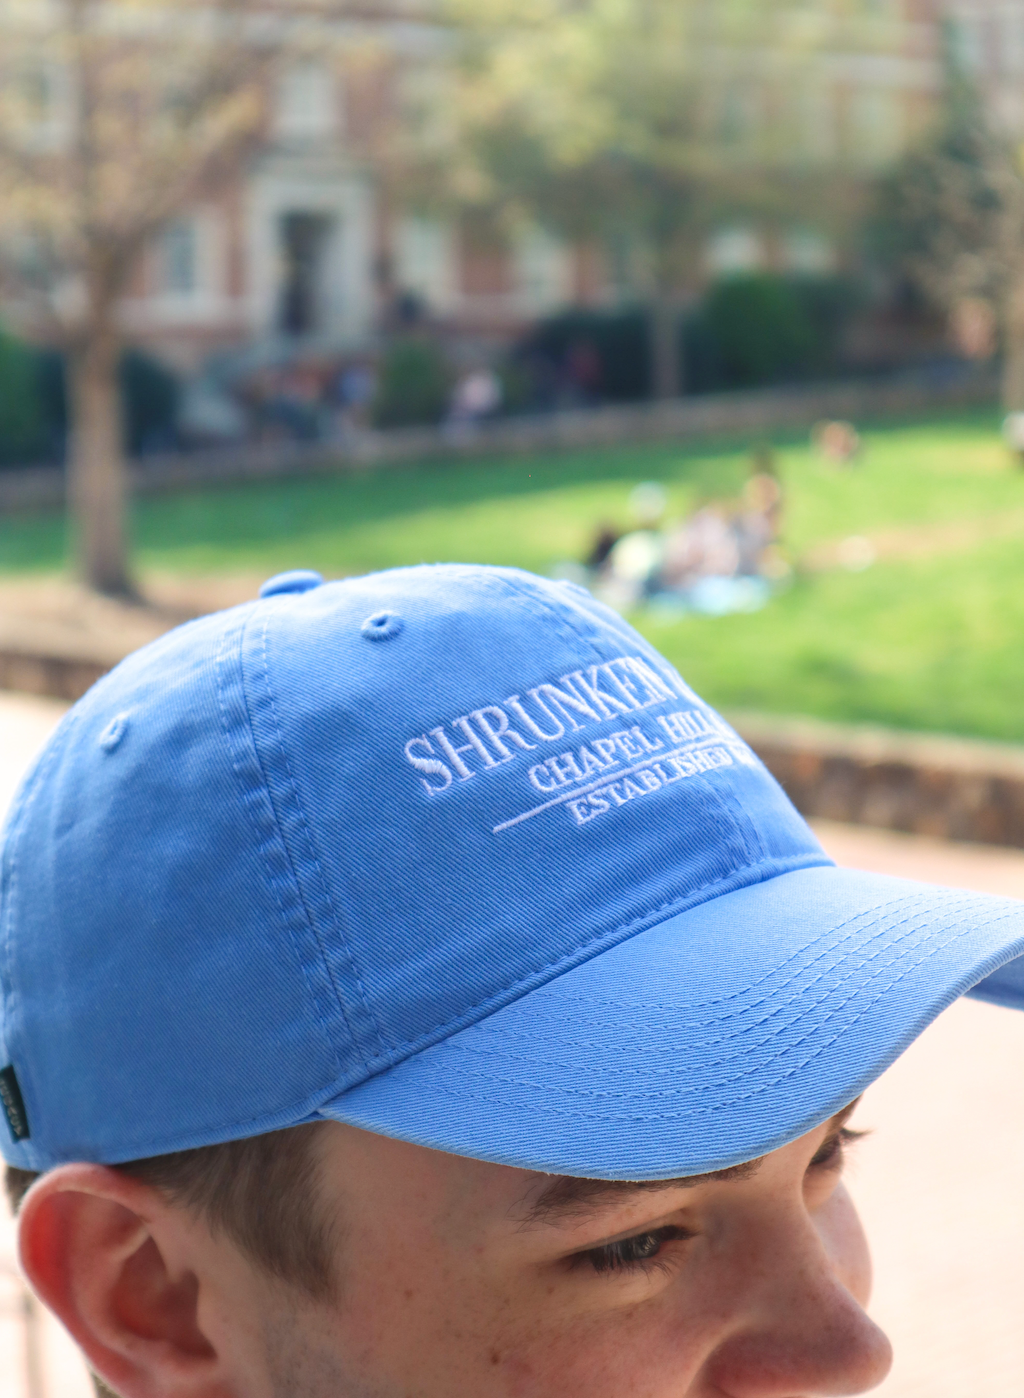 Shrunken Head Hat in Carolina Blue Adjustable Adult